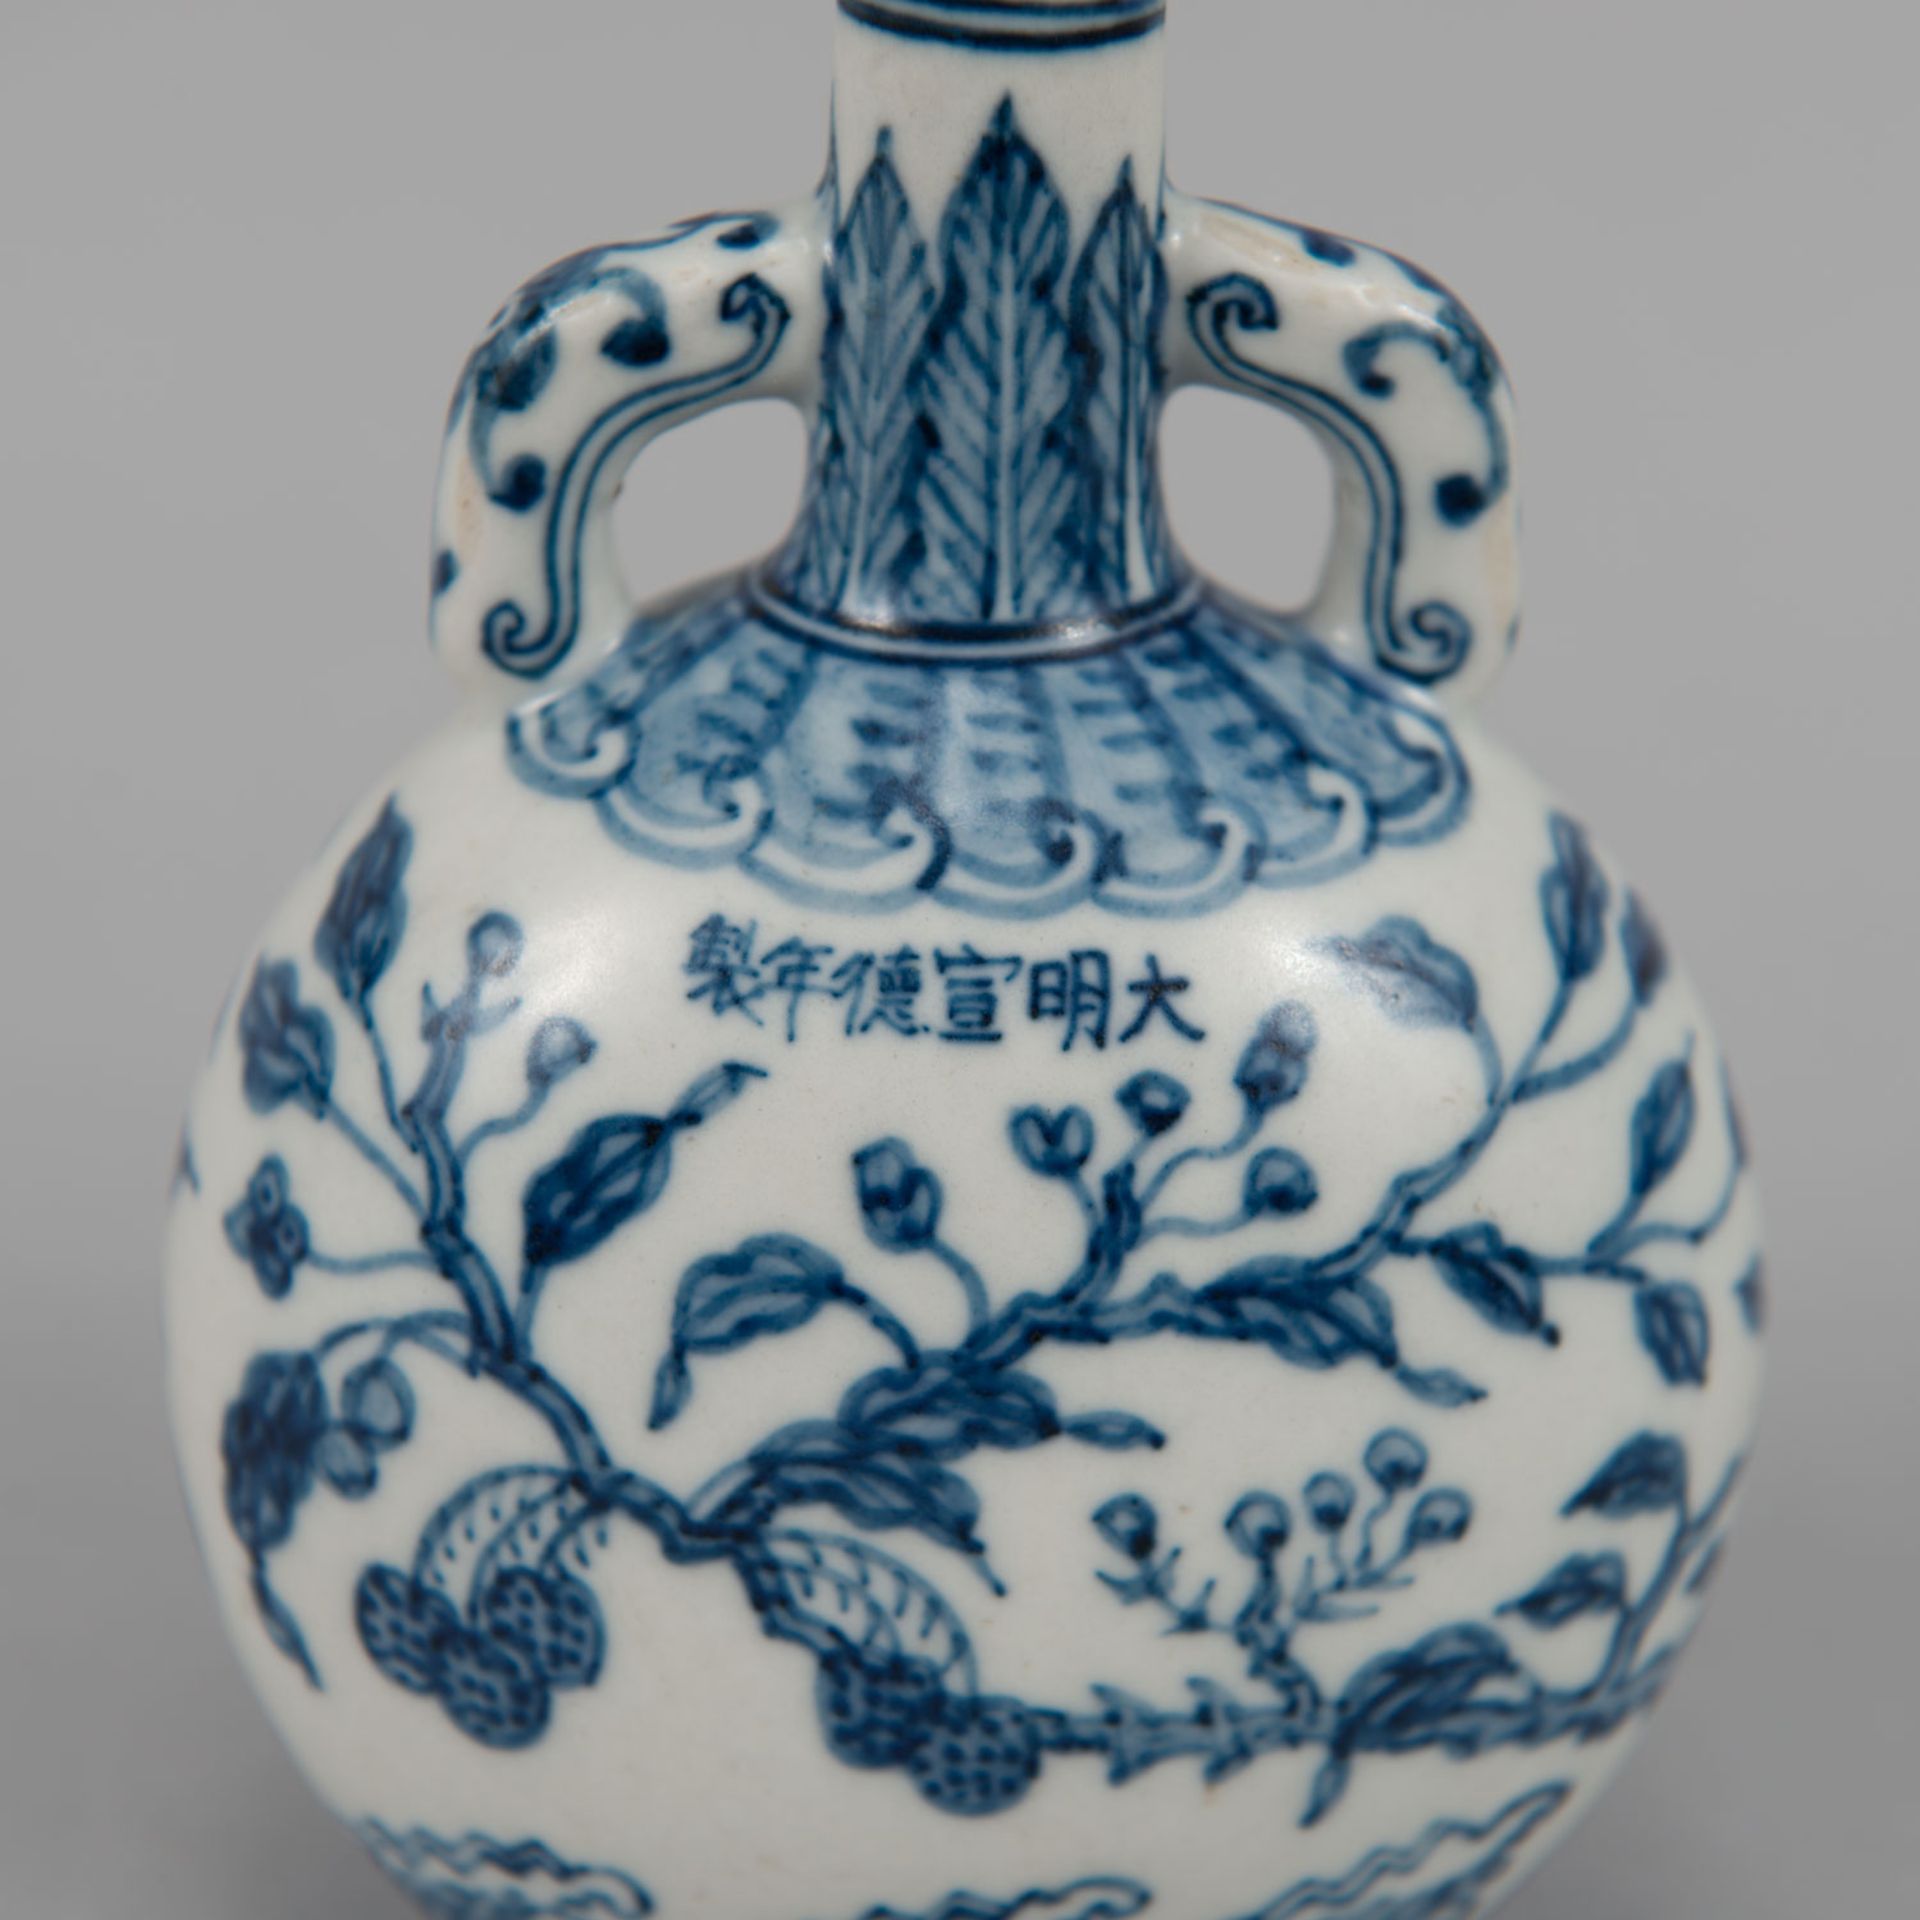 Chinese porcelain bottle - Image 3 of 3